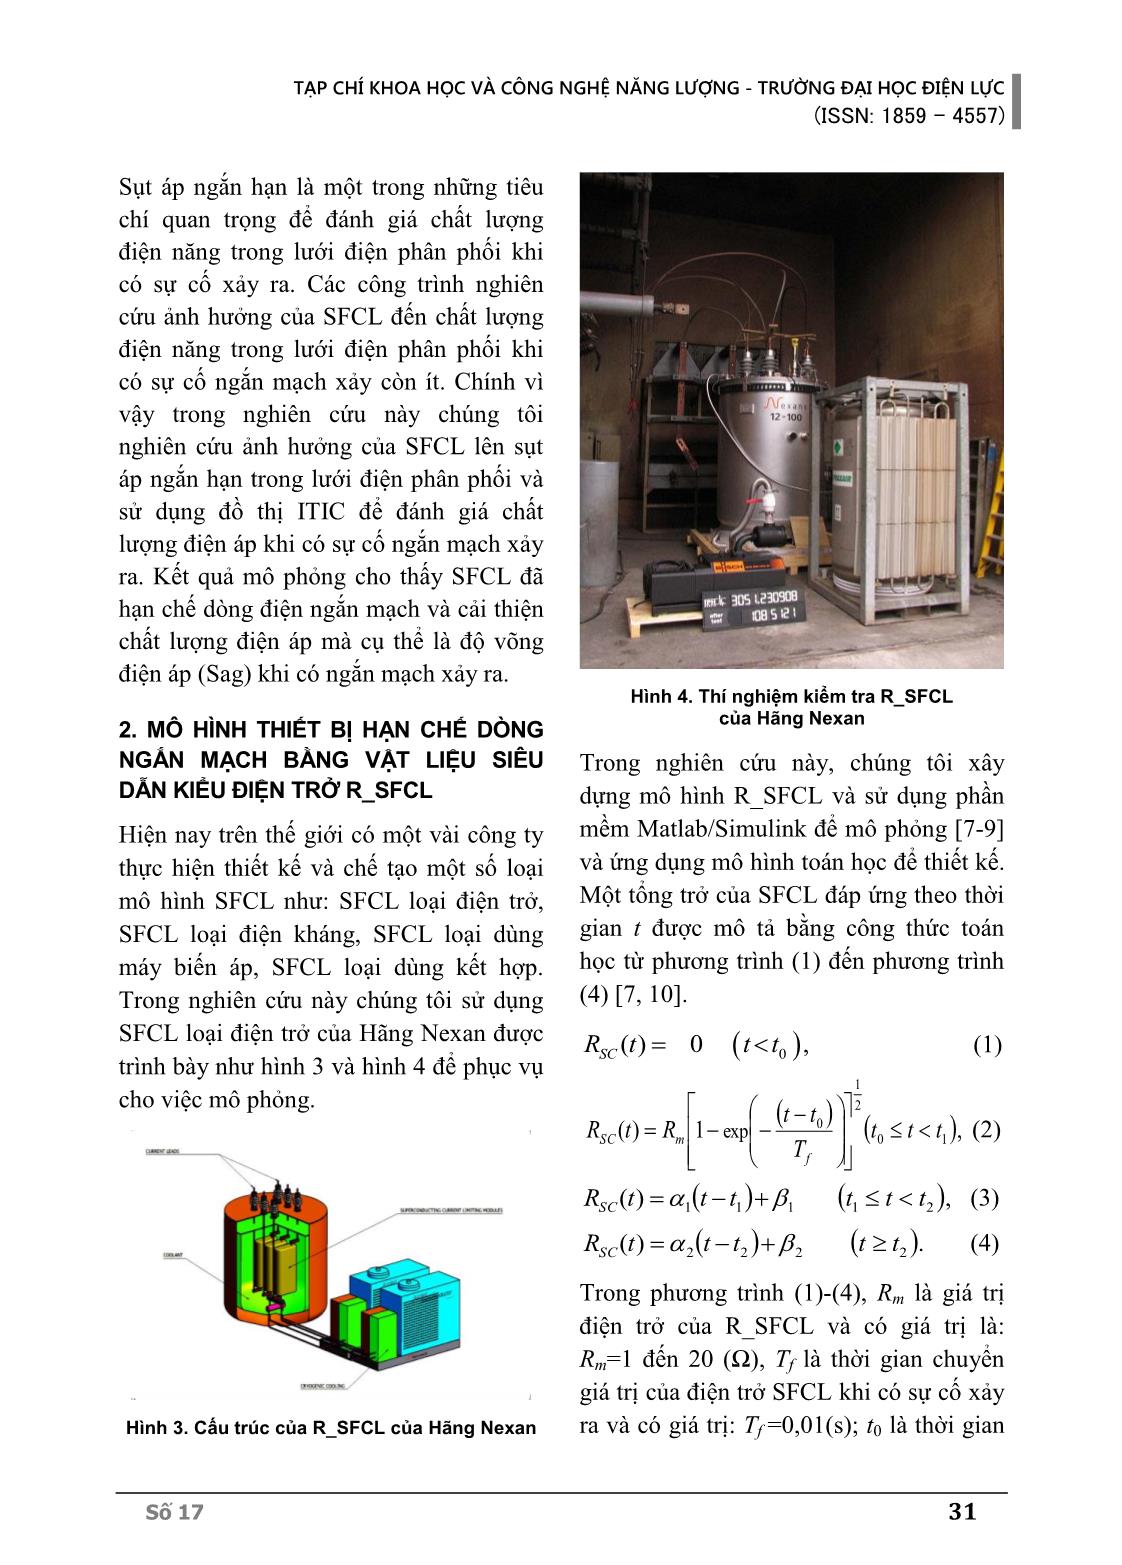 Nghiên cứu cải thiện sụt áp ngắn hạn trong hệ thống điện phân phối sử dụng thiết bị hạn chế dòng ngắn mạch bằng vật liệu siêu dẫn kiểu điện trở (R_SFCL) trang 3